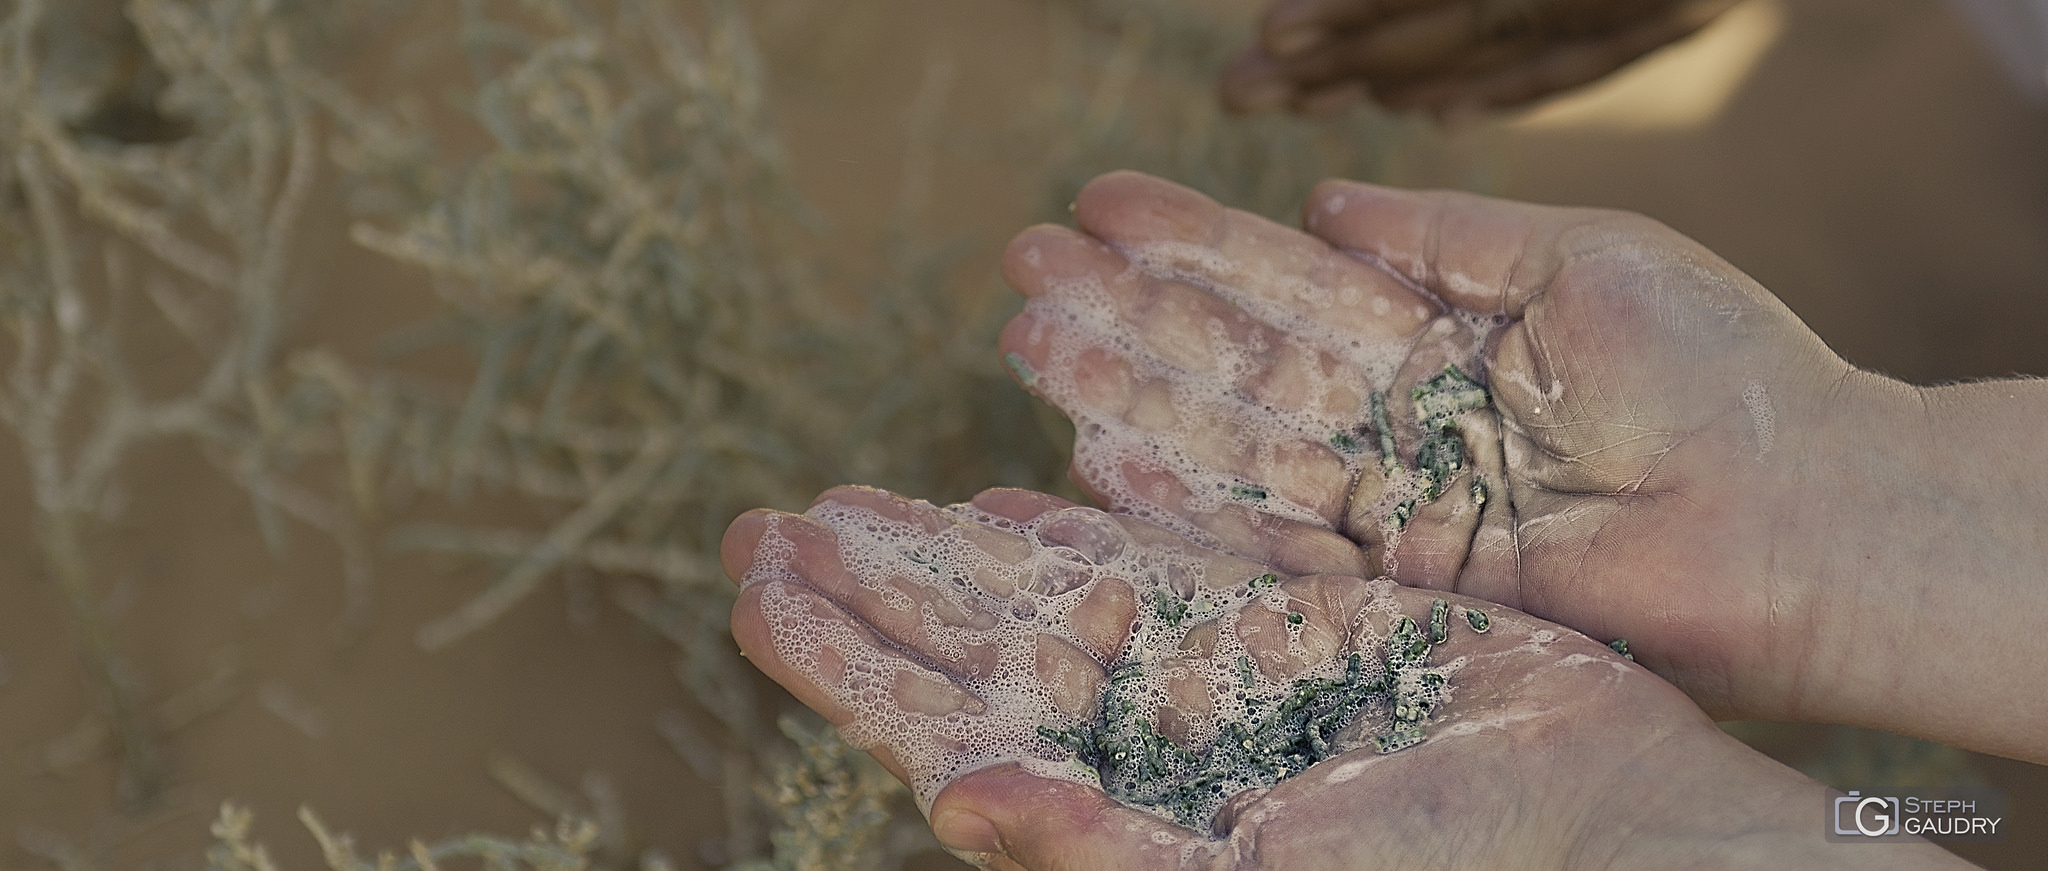 Le savon du désert mousse avec un peu d'eau [Click to start slideshow]